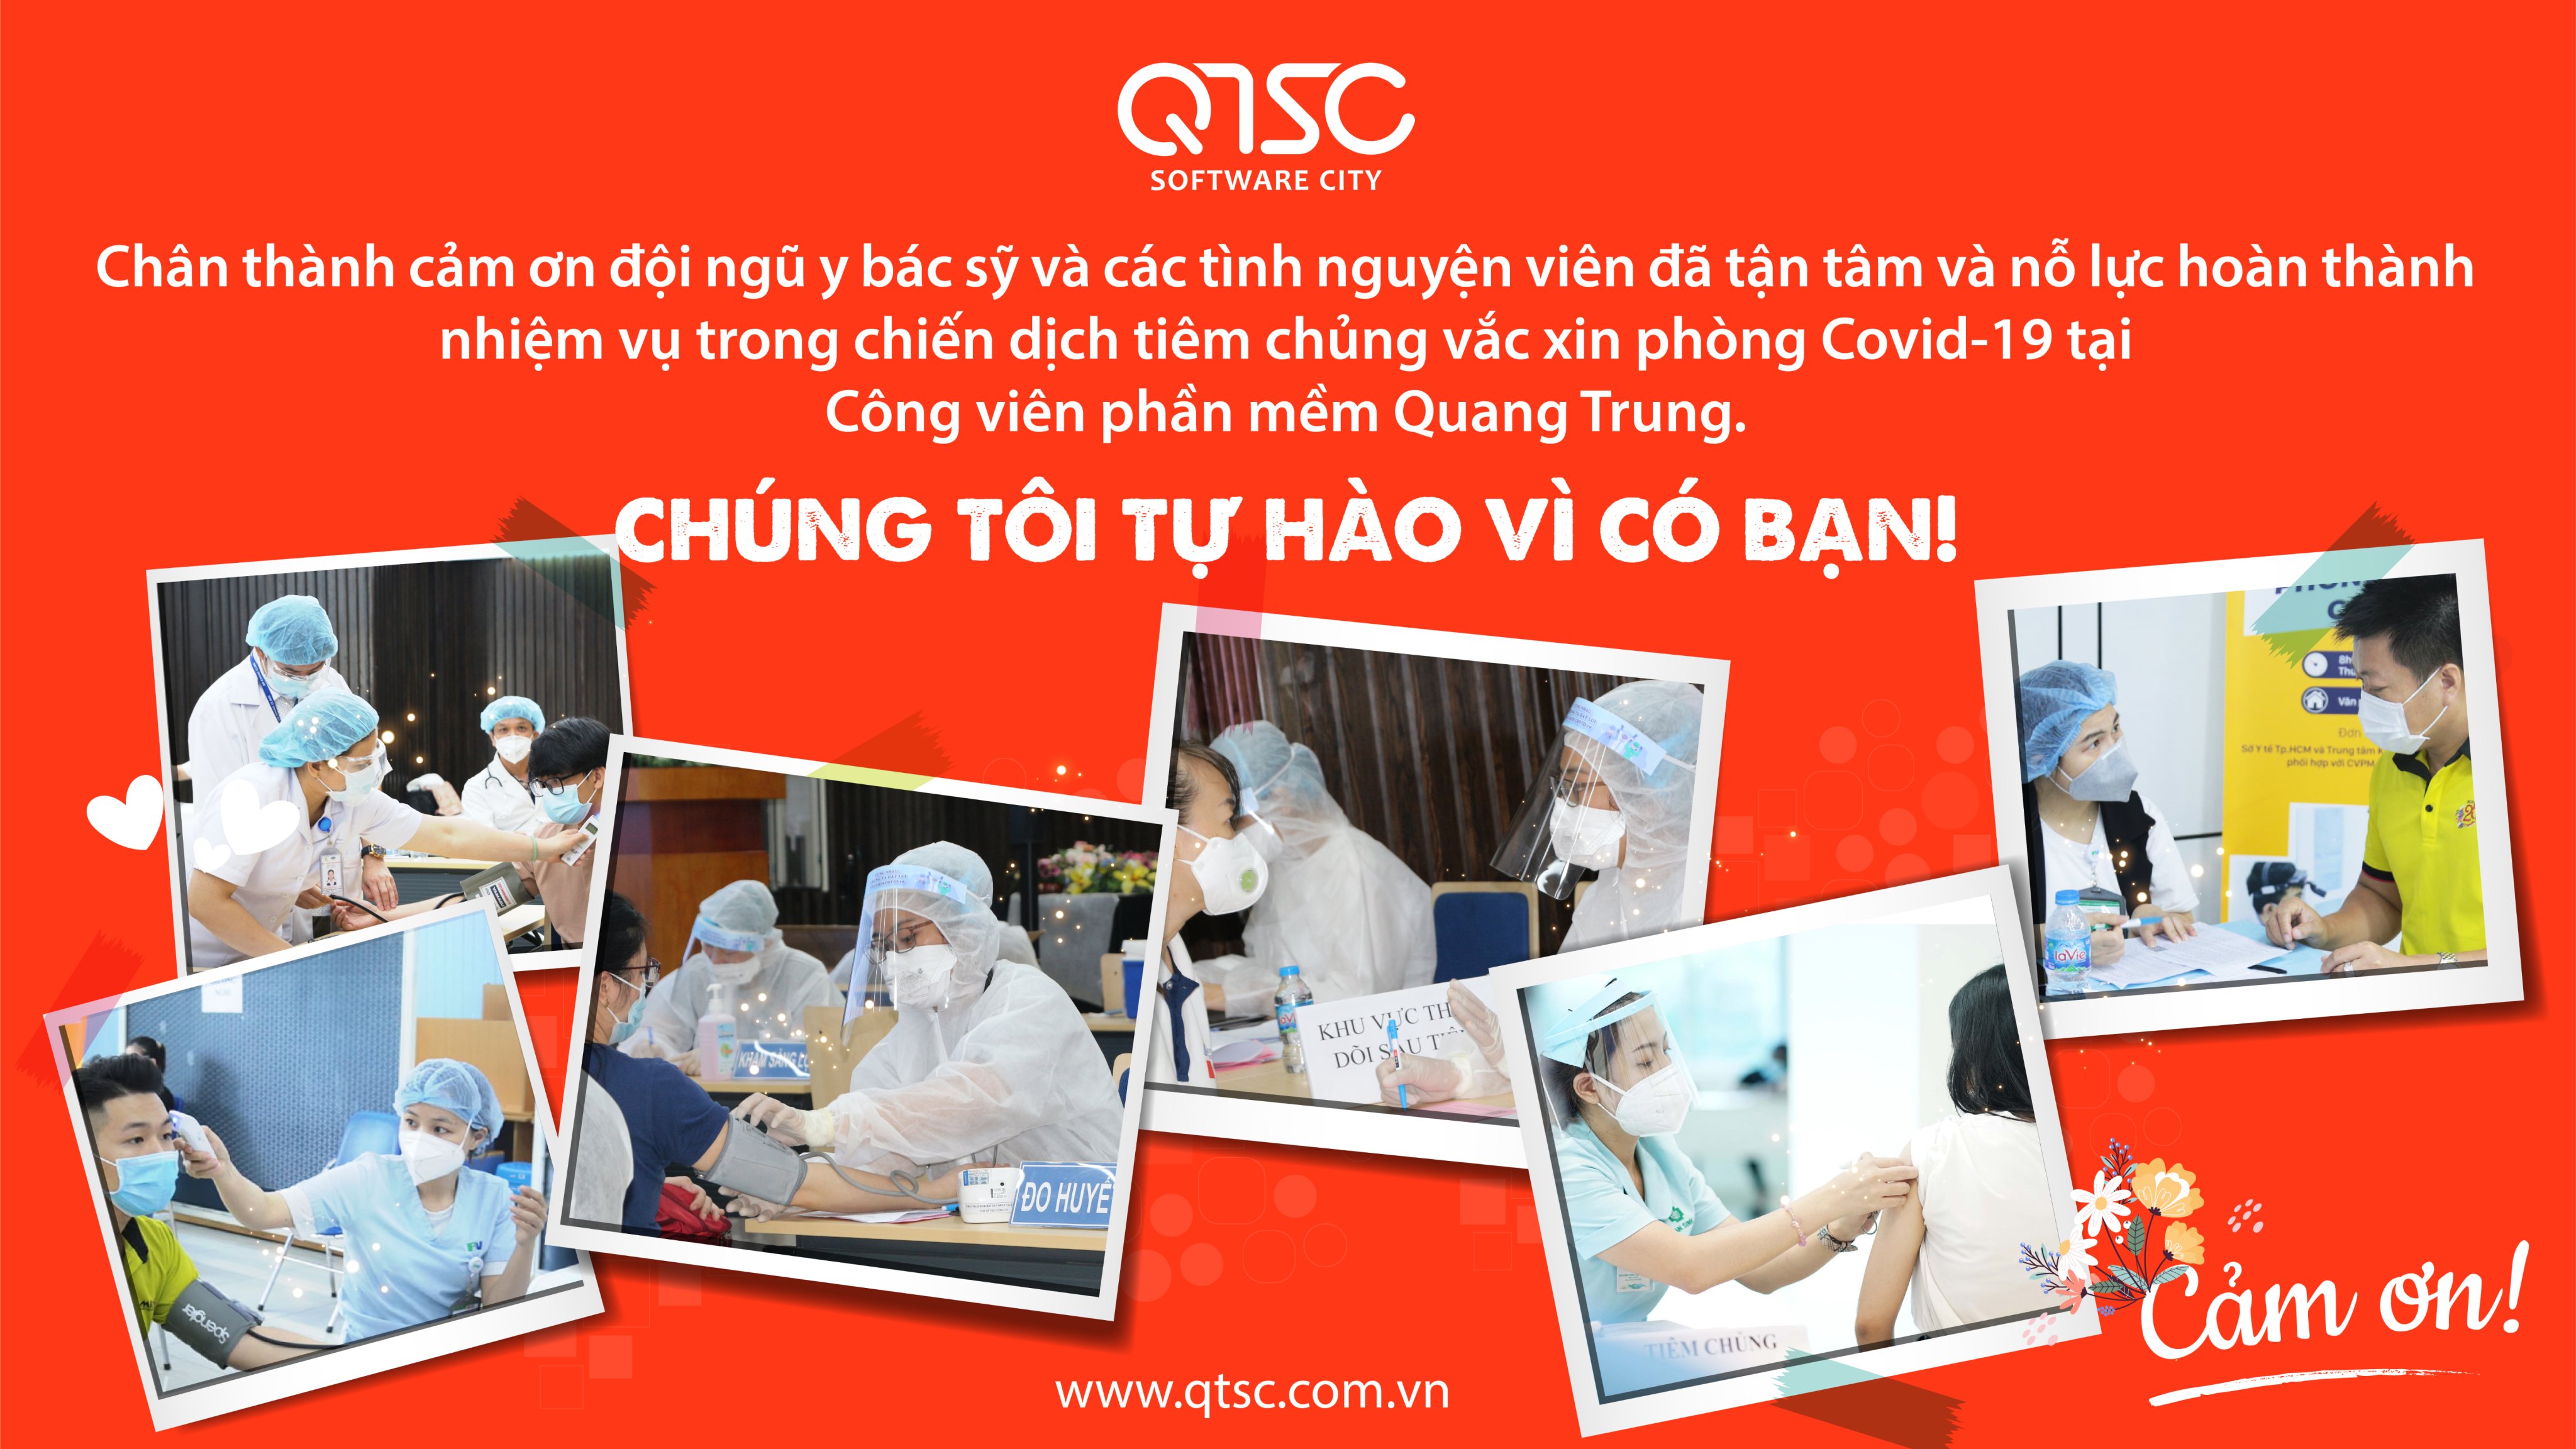 Chiến dịch tiêm vaccine phòng Covid-19 tại Công viên phần mềm Quang Trung đã thành công tốt đẹp